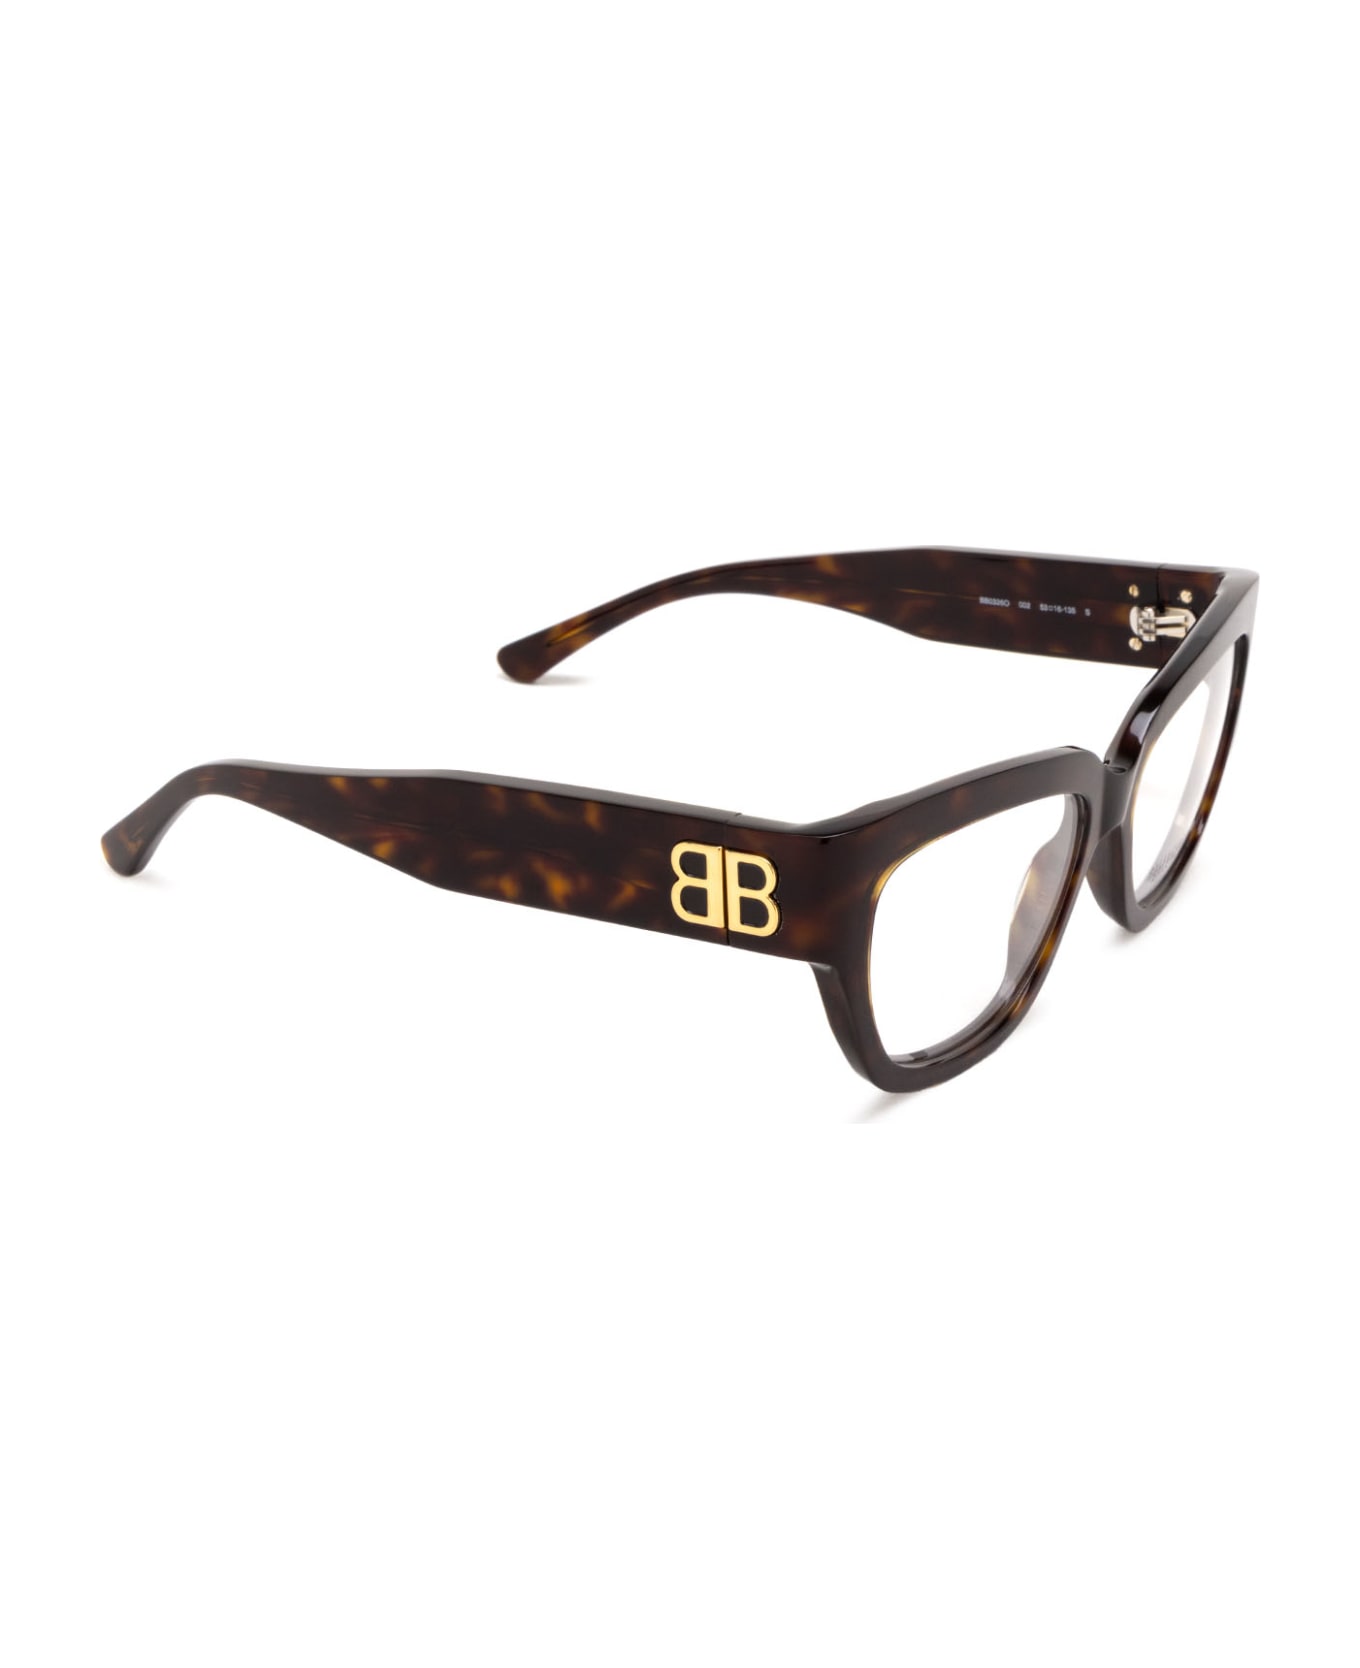 Balenciaga Eyewear Bb0326o Glasses - Havana